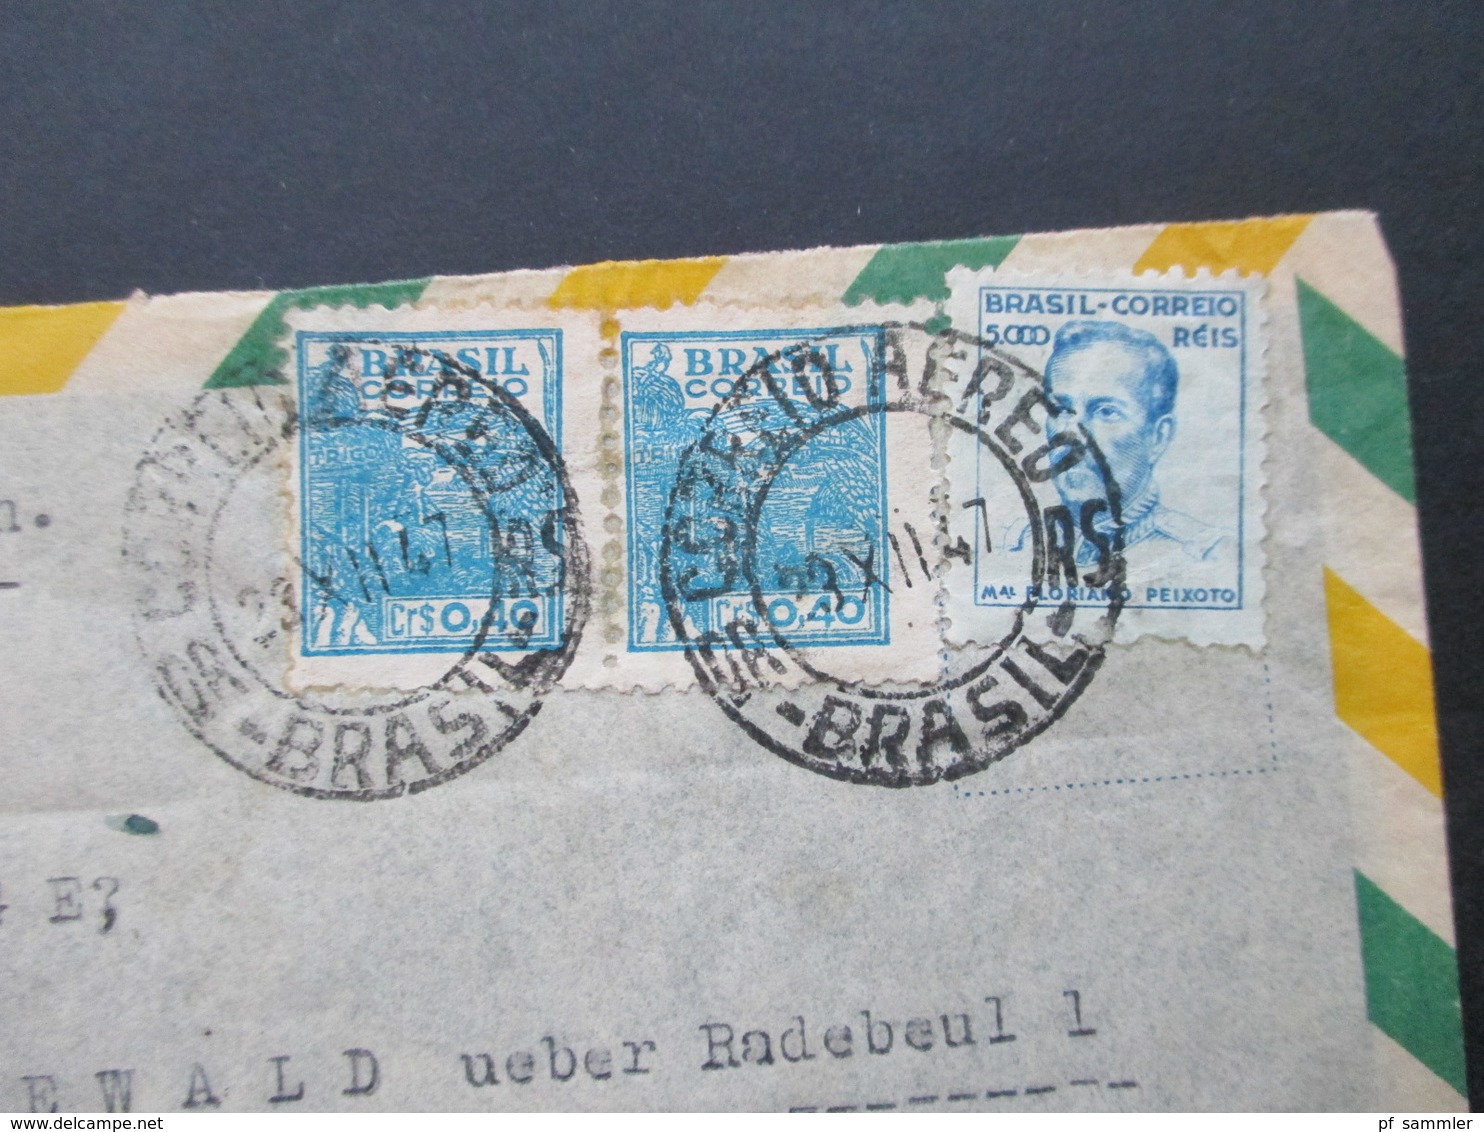 Brasilien 1947 Luftpostbrief Nach Friedewald Mit Ak Stempel Berlin Paolo Roscher Reprensentante Rua Carlos V. Koseritz - Lettres & Documents